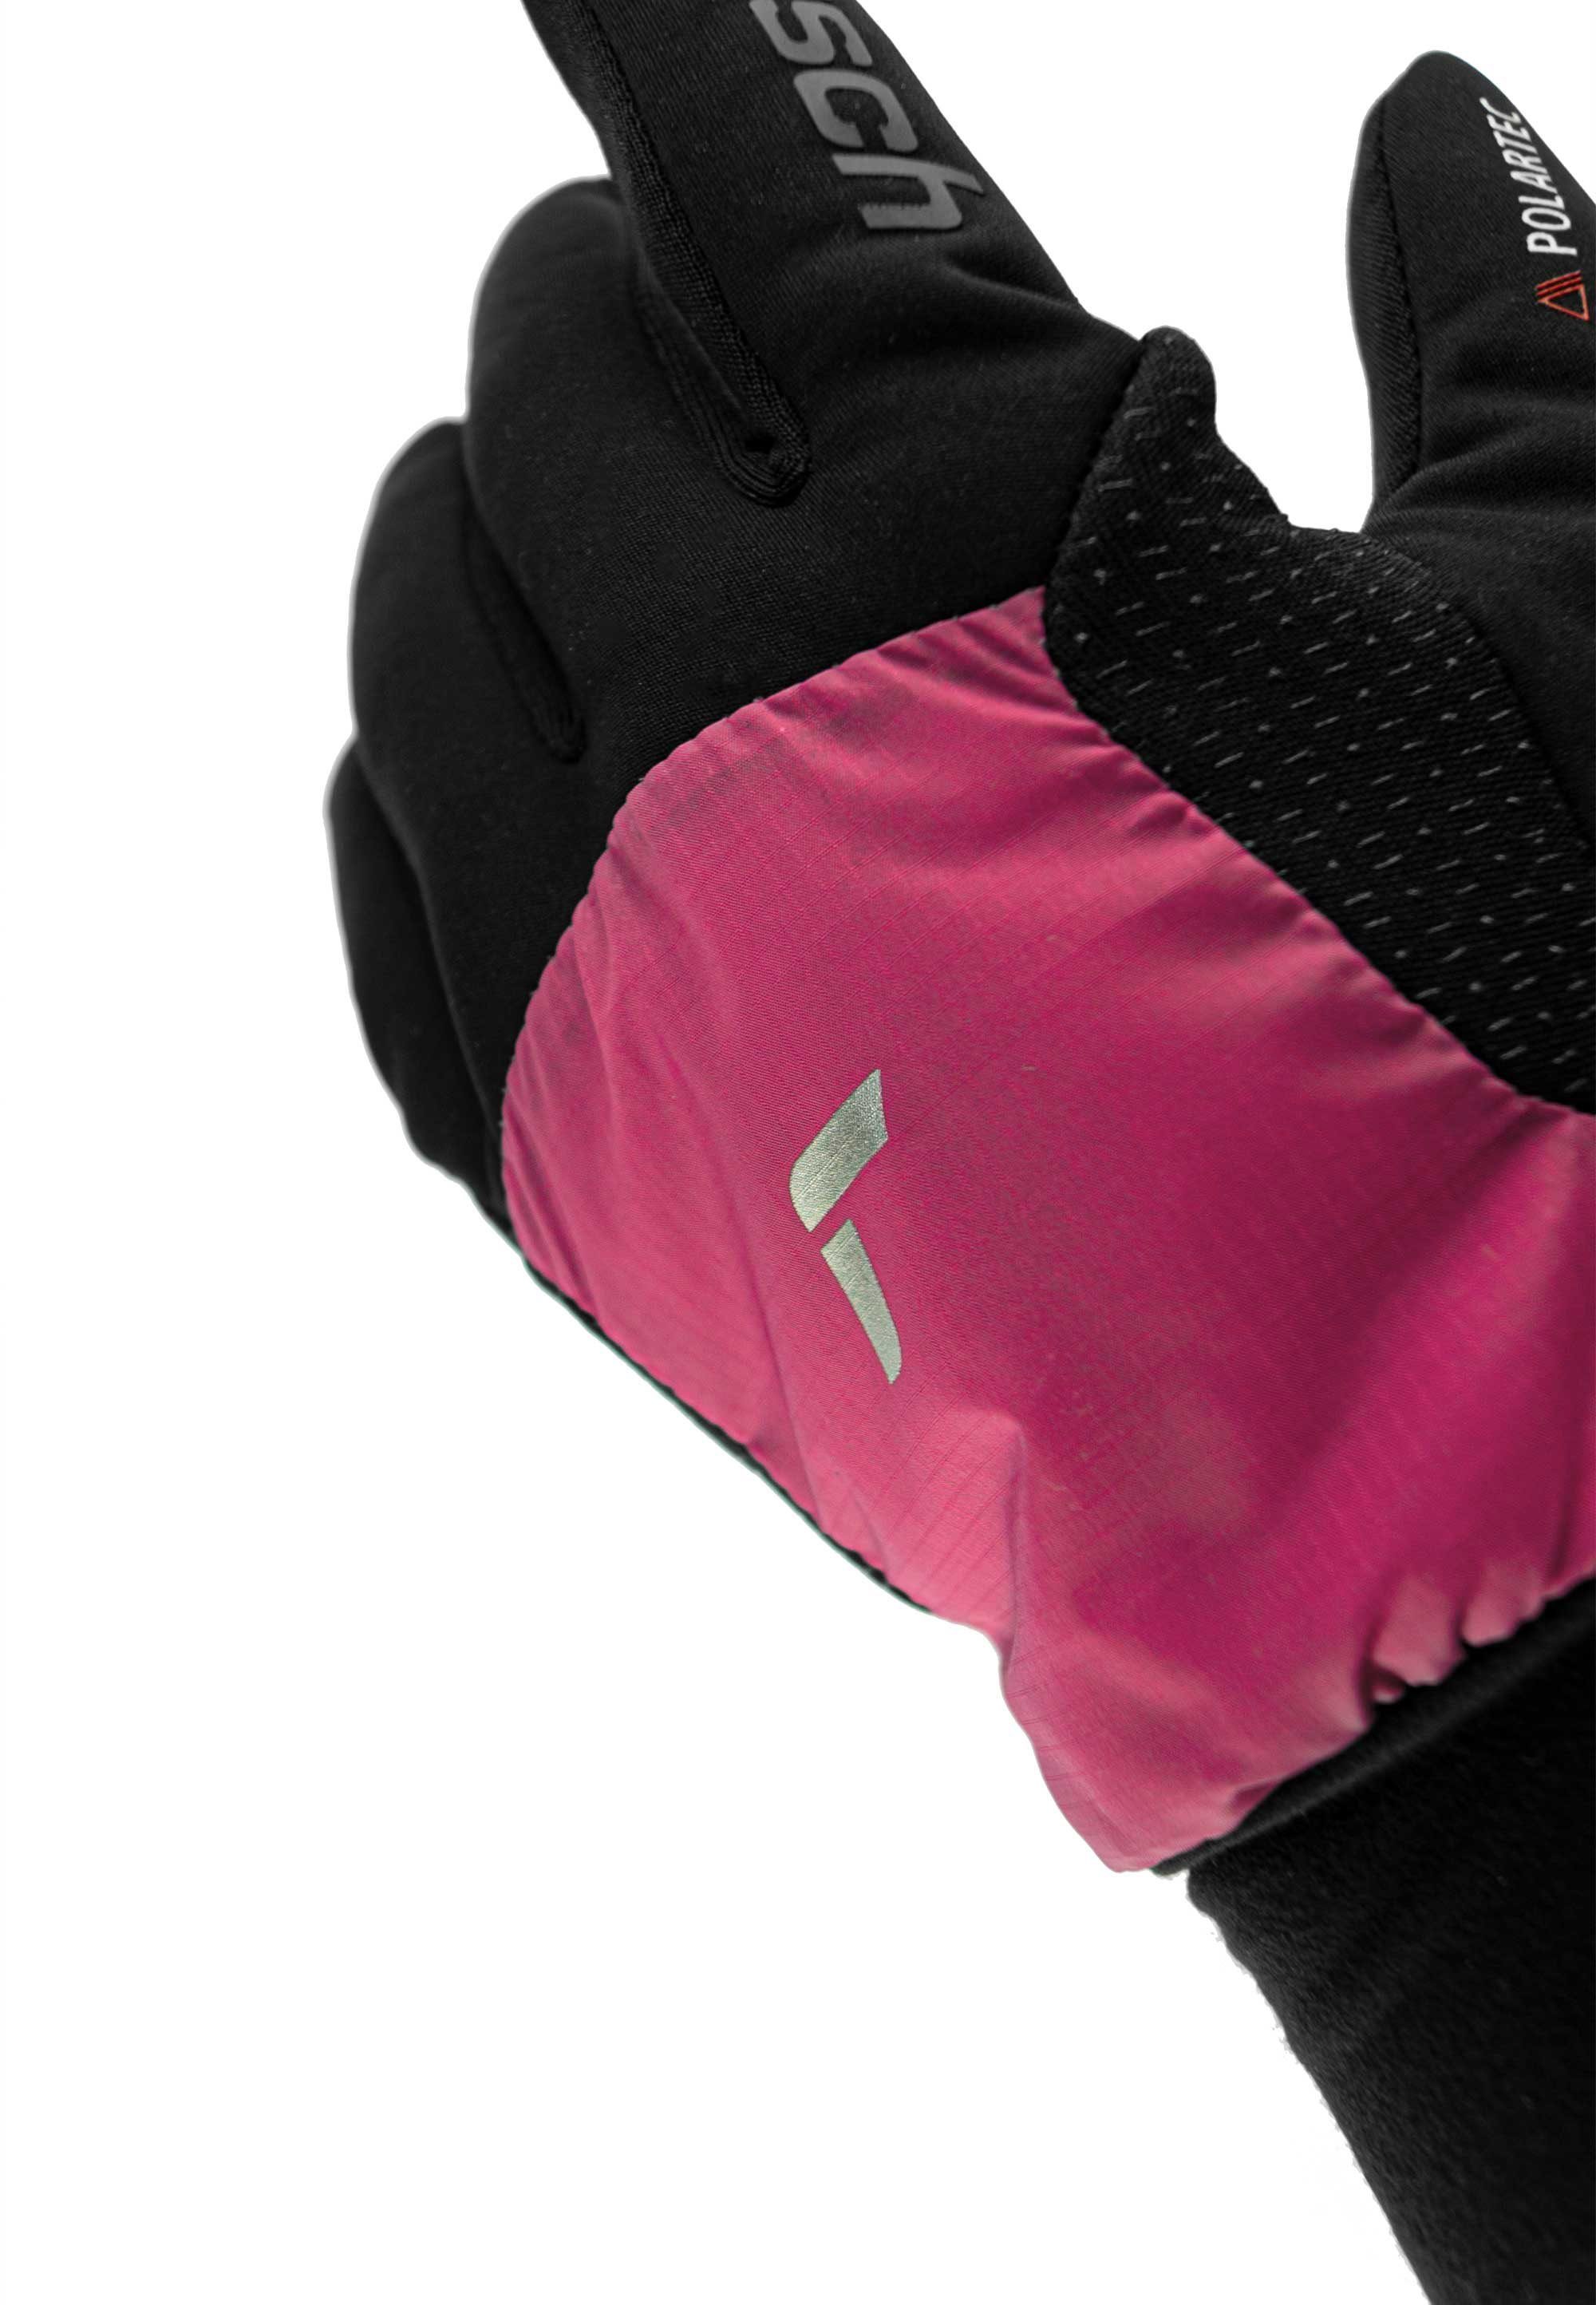 mit Hybrid schwarz-pink Reusch Touchscreen-Funktion Garhwal praktischer Skihandschuhe